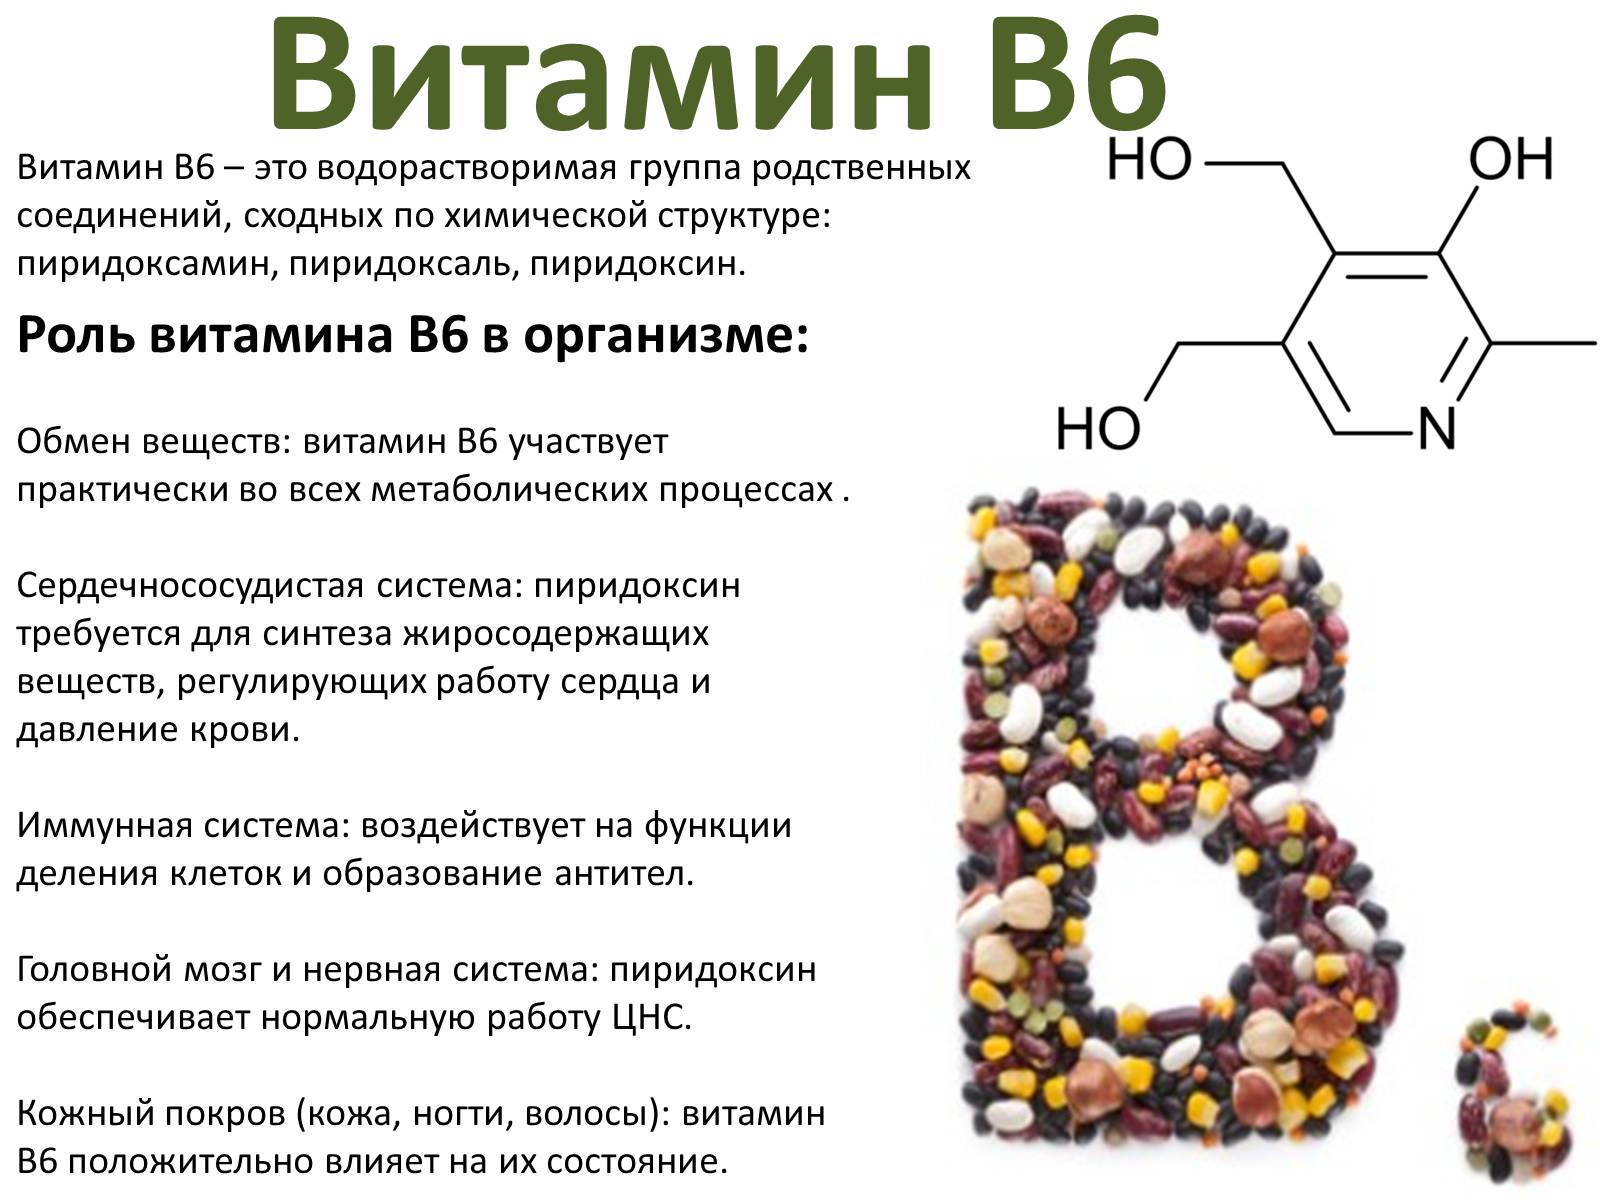 Побочные эффекты б6. Формула и роль витамина в6. Витамин в6 физиологическое название. Рибофлавин (витамин в12. Роль витамина b6 в организме человека.